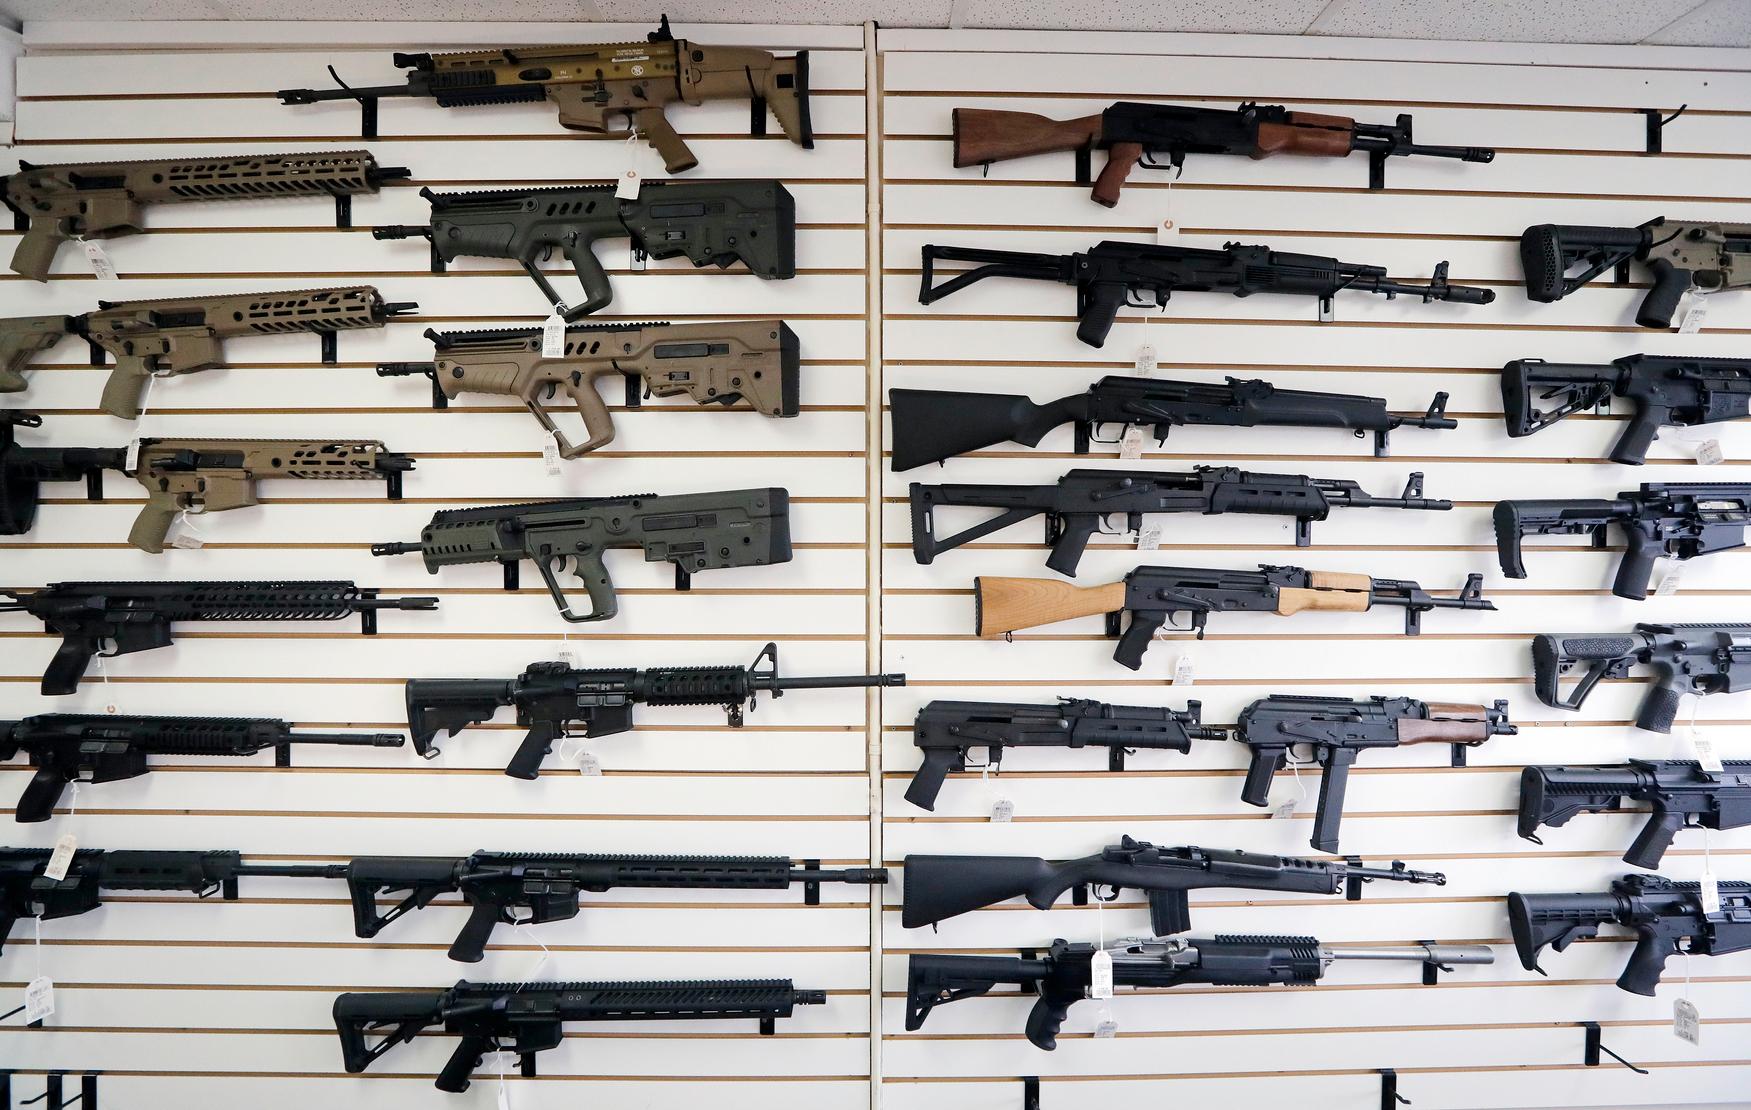 Nya Zeeland stoppar försäljningen av en del vapen med omedelbar verkan, till följd av terrorattackerna i Christchurch. Bilden är från en amerikansk vapenbutik. Arkivbild.